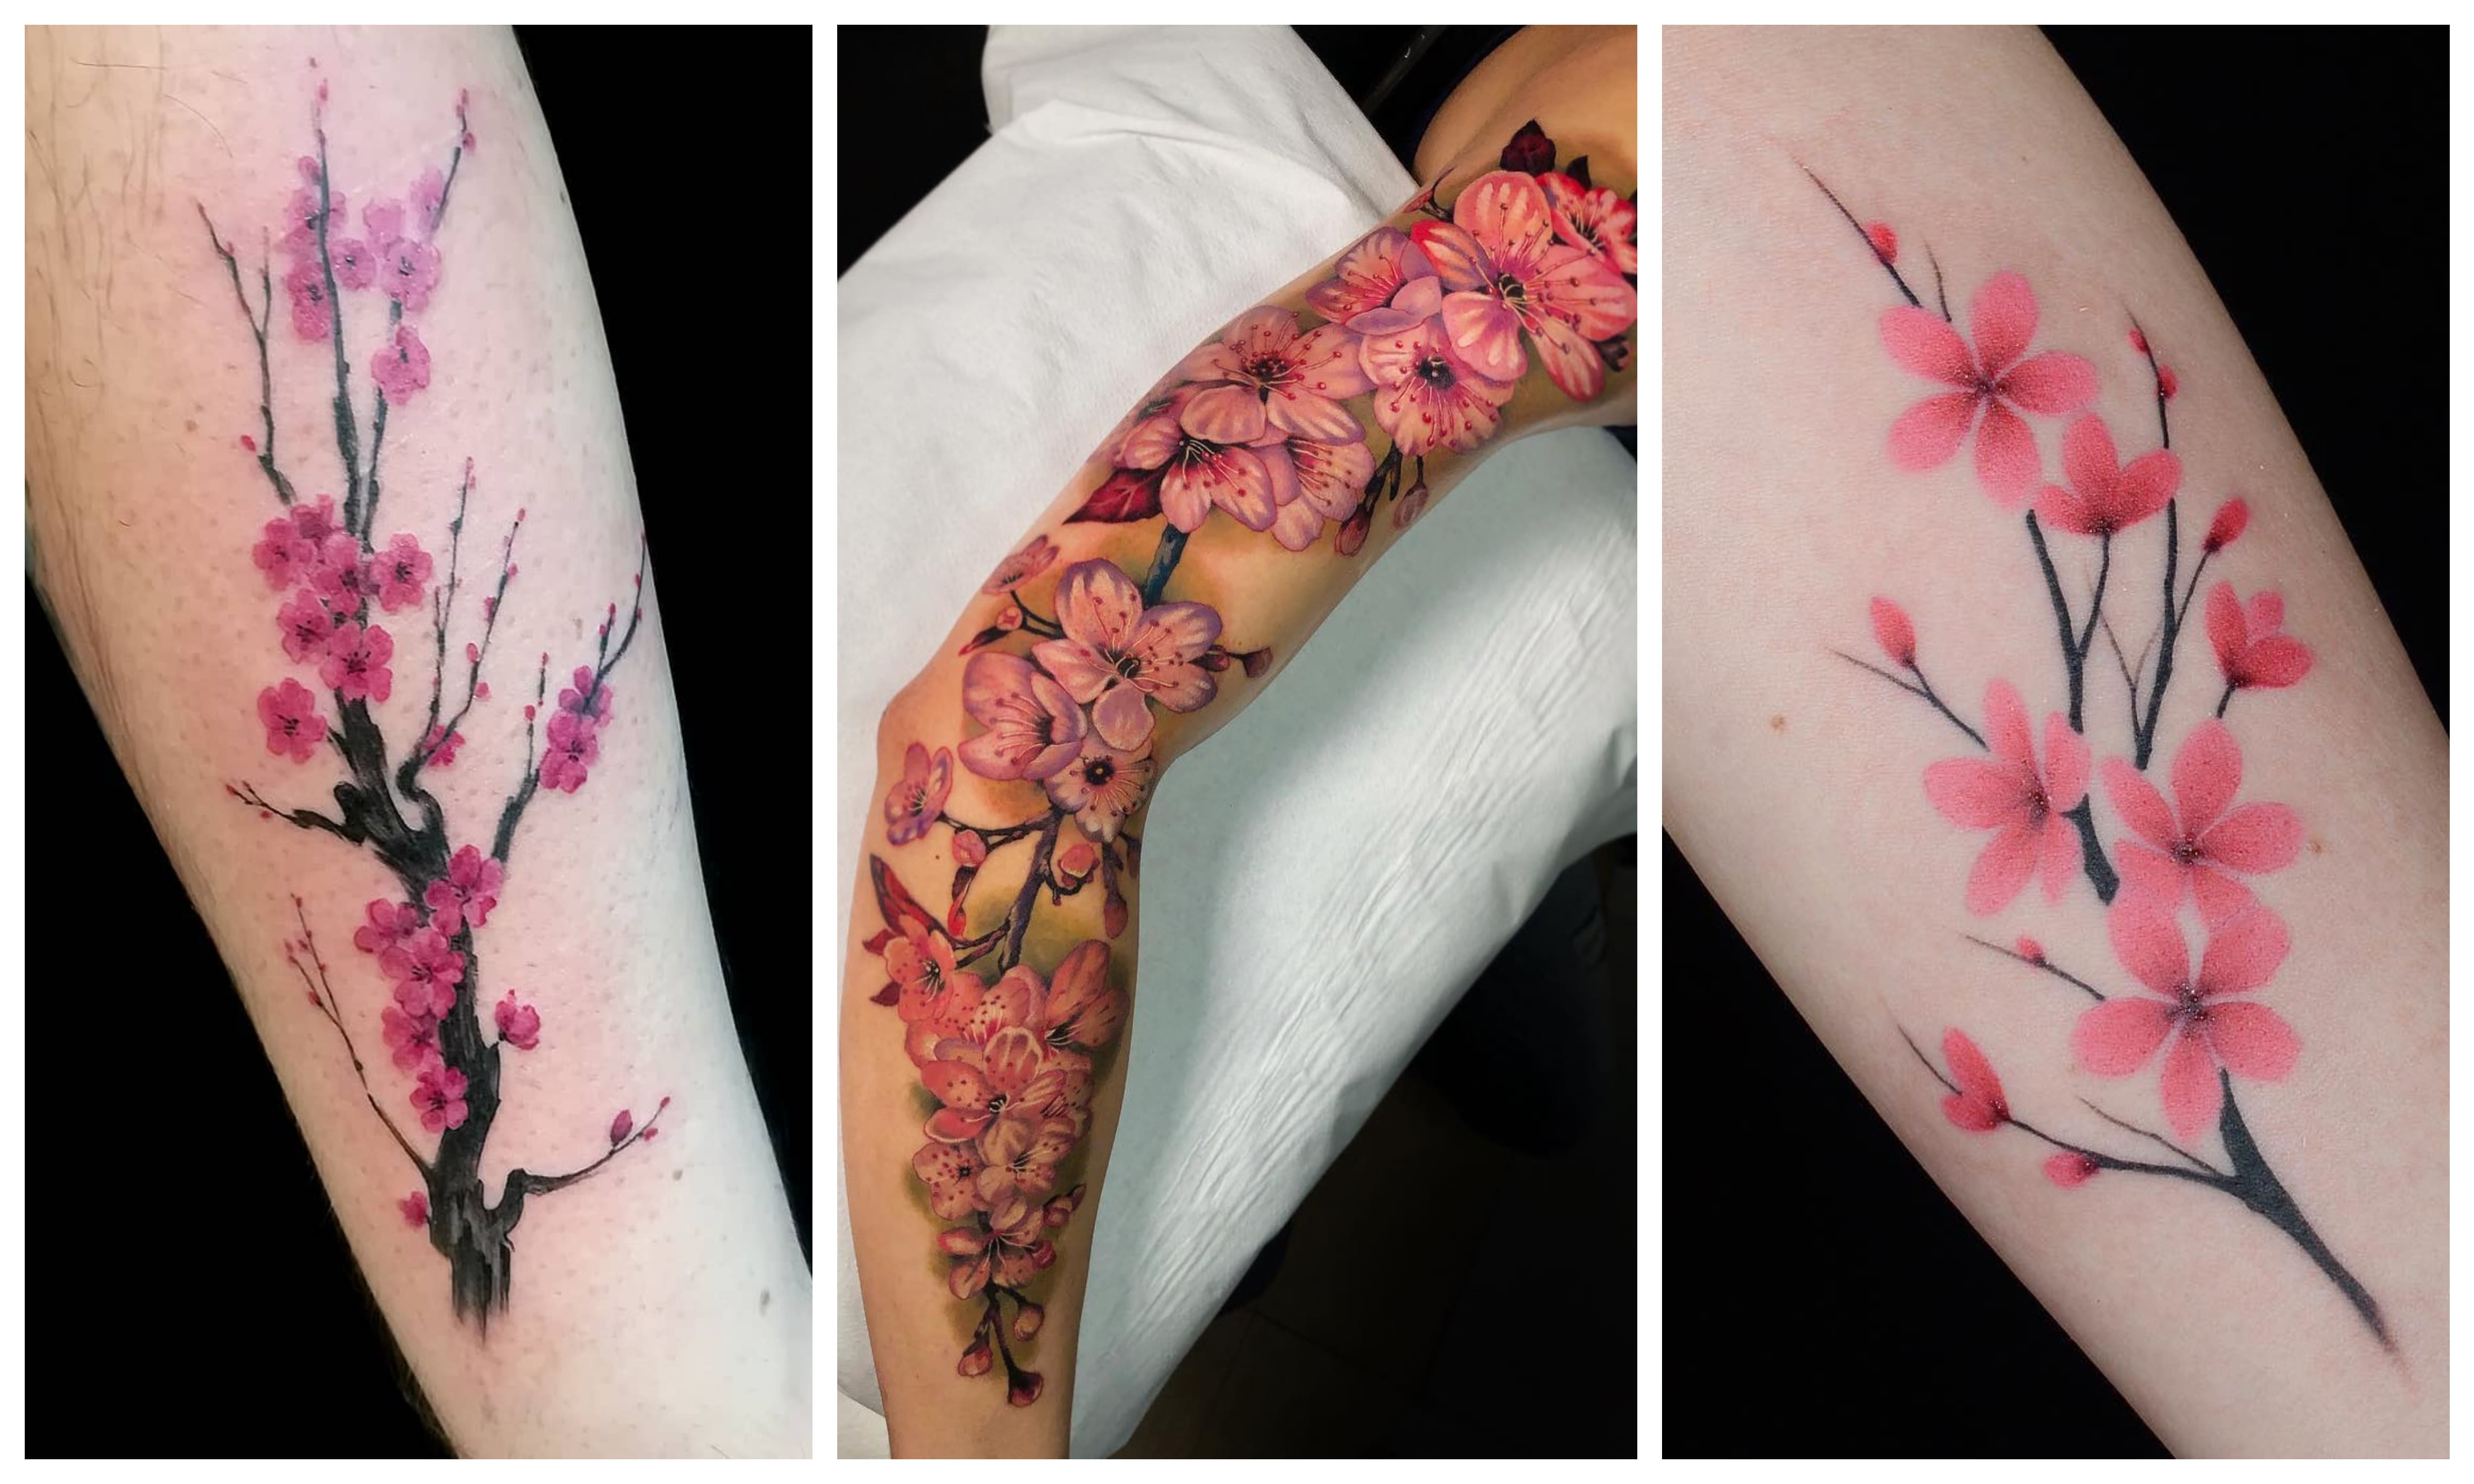 Тату сакура: частичка японской культуры в татуировках